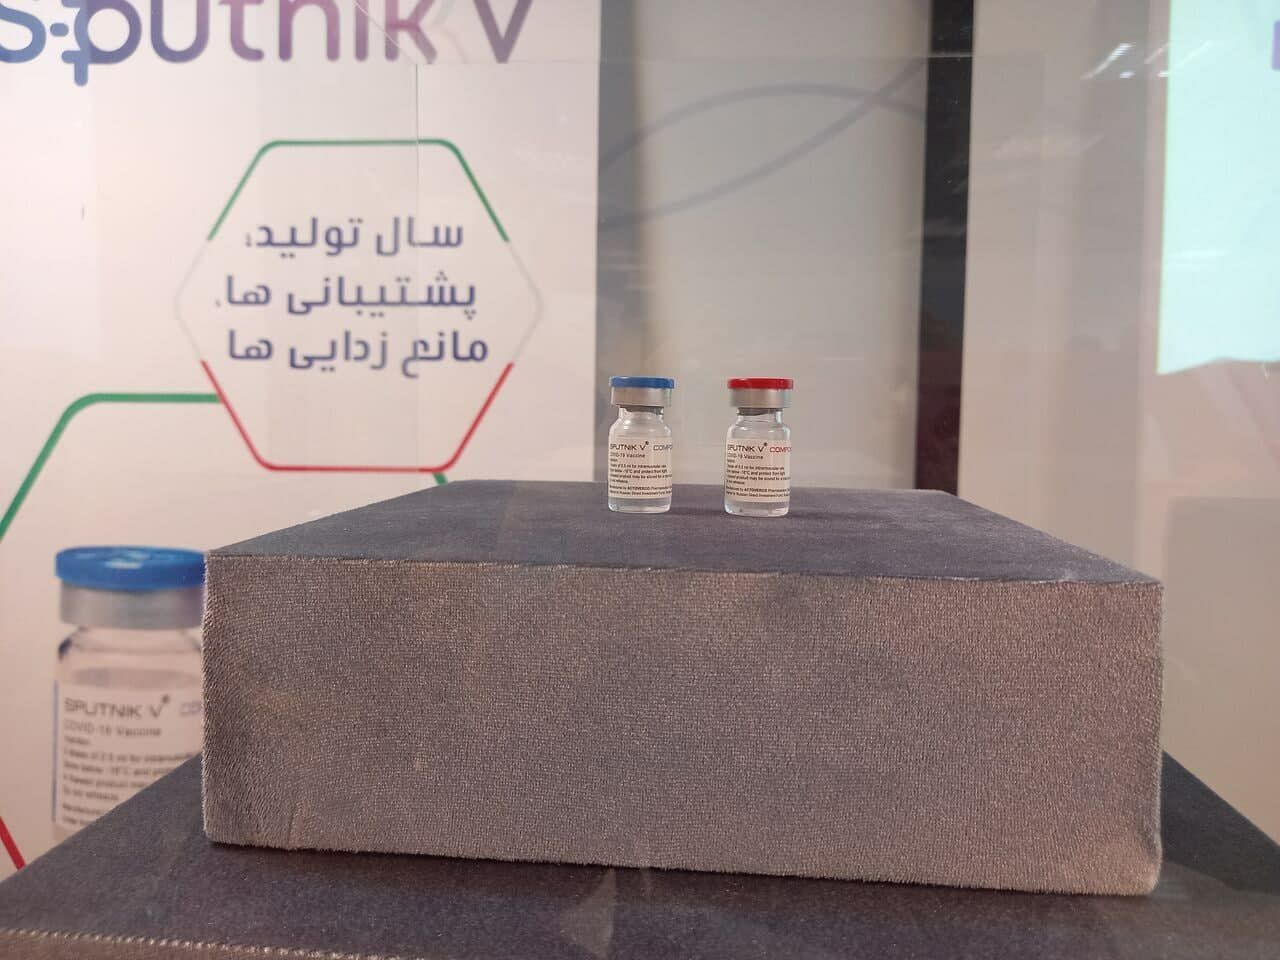 تولید ماهانه ۲ میلیون دوز واکسن «اسپوتنیک وی» در البرز